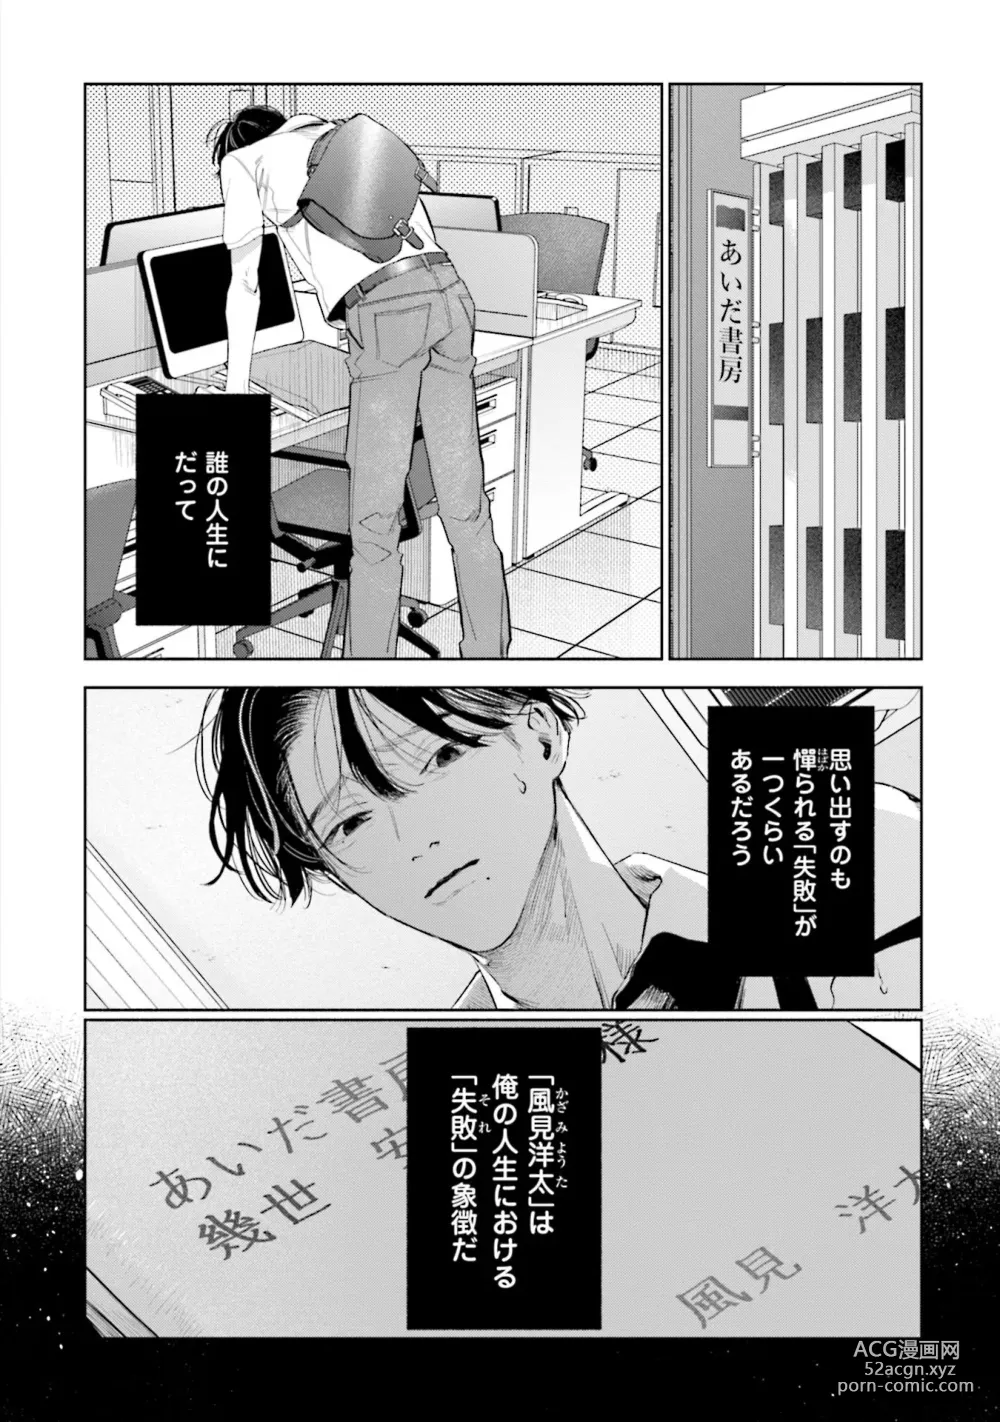 Page 6 of manga Hitoriyogari no Vanilla